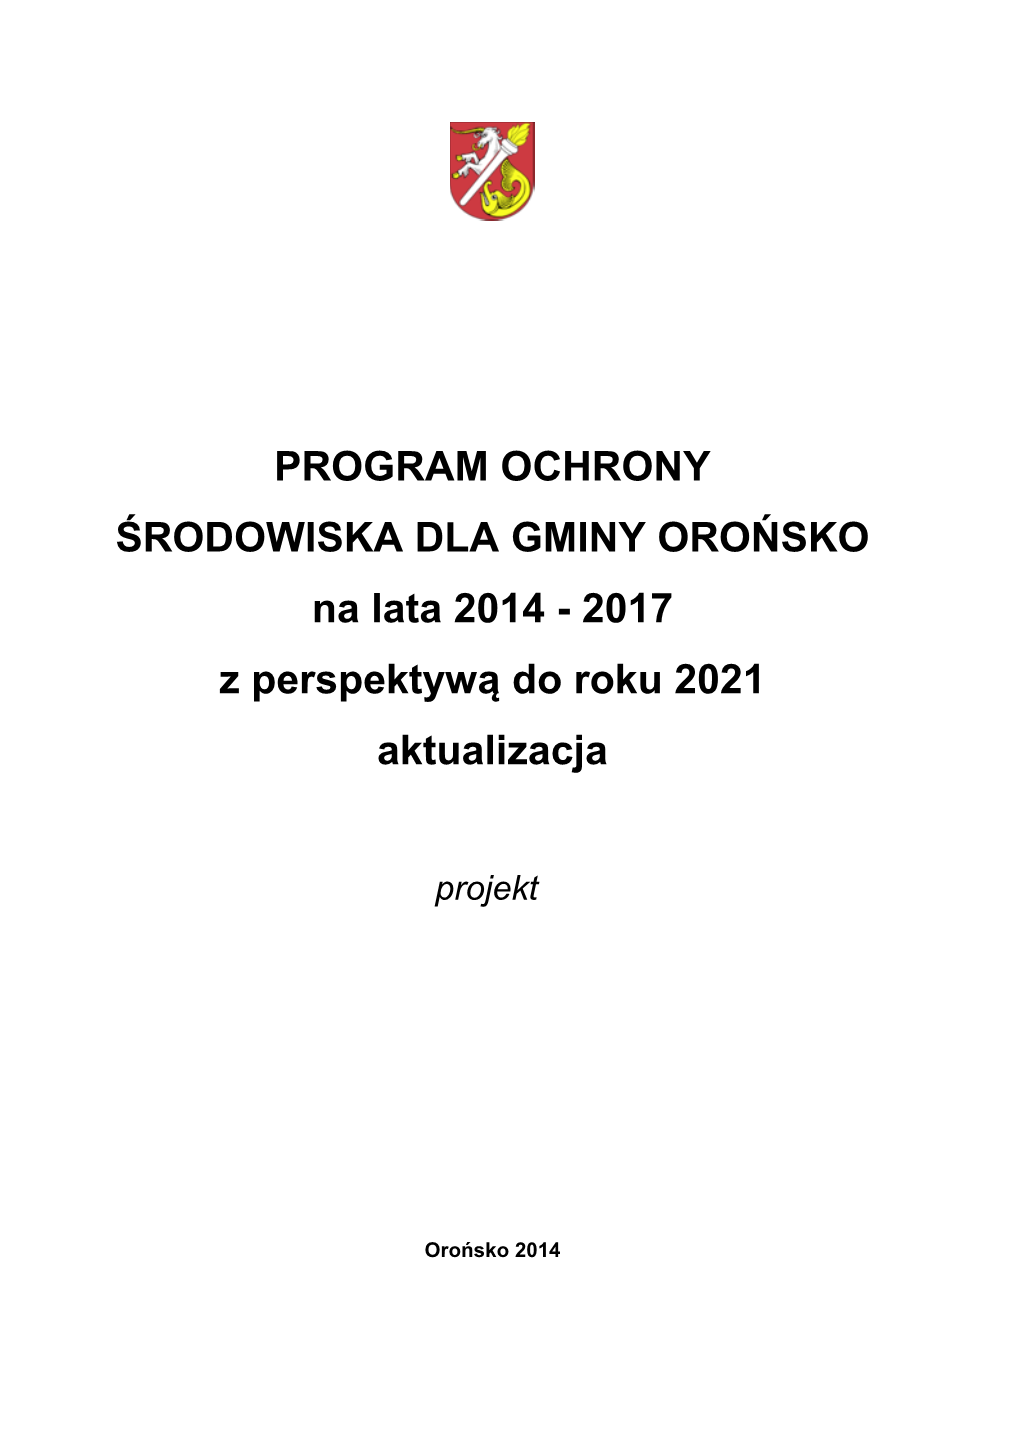 PROGRAM OCHRONY ŚRODOWISKA DLA GMINY OROŃSKO Na Lata 2014 - 2017 Z Perspektywą Do Roku 2021 Aktualizacja